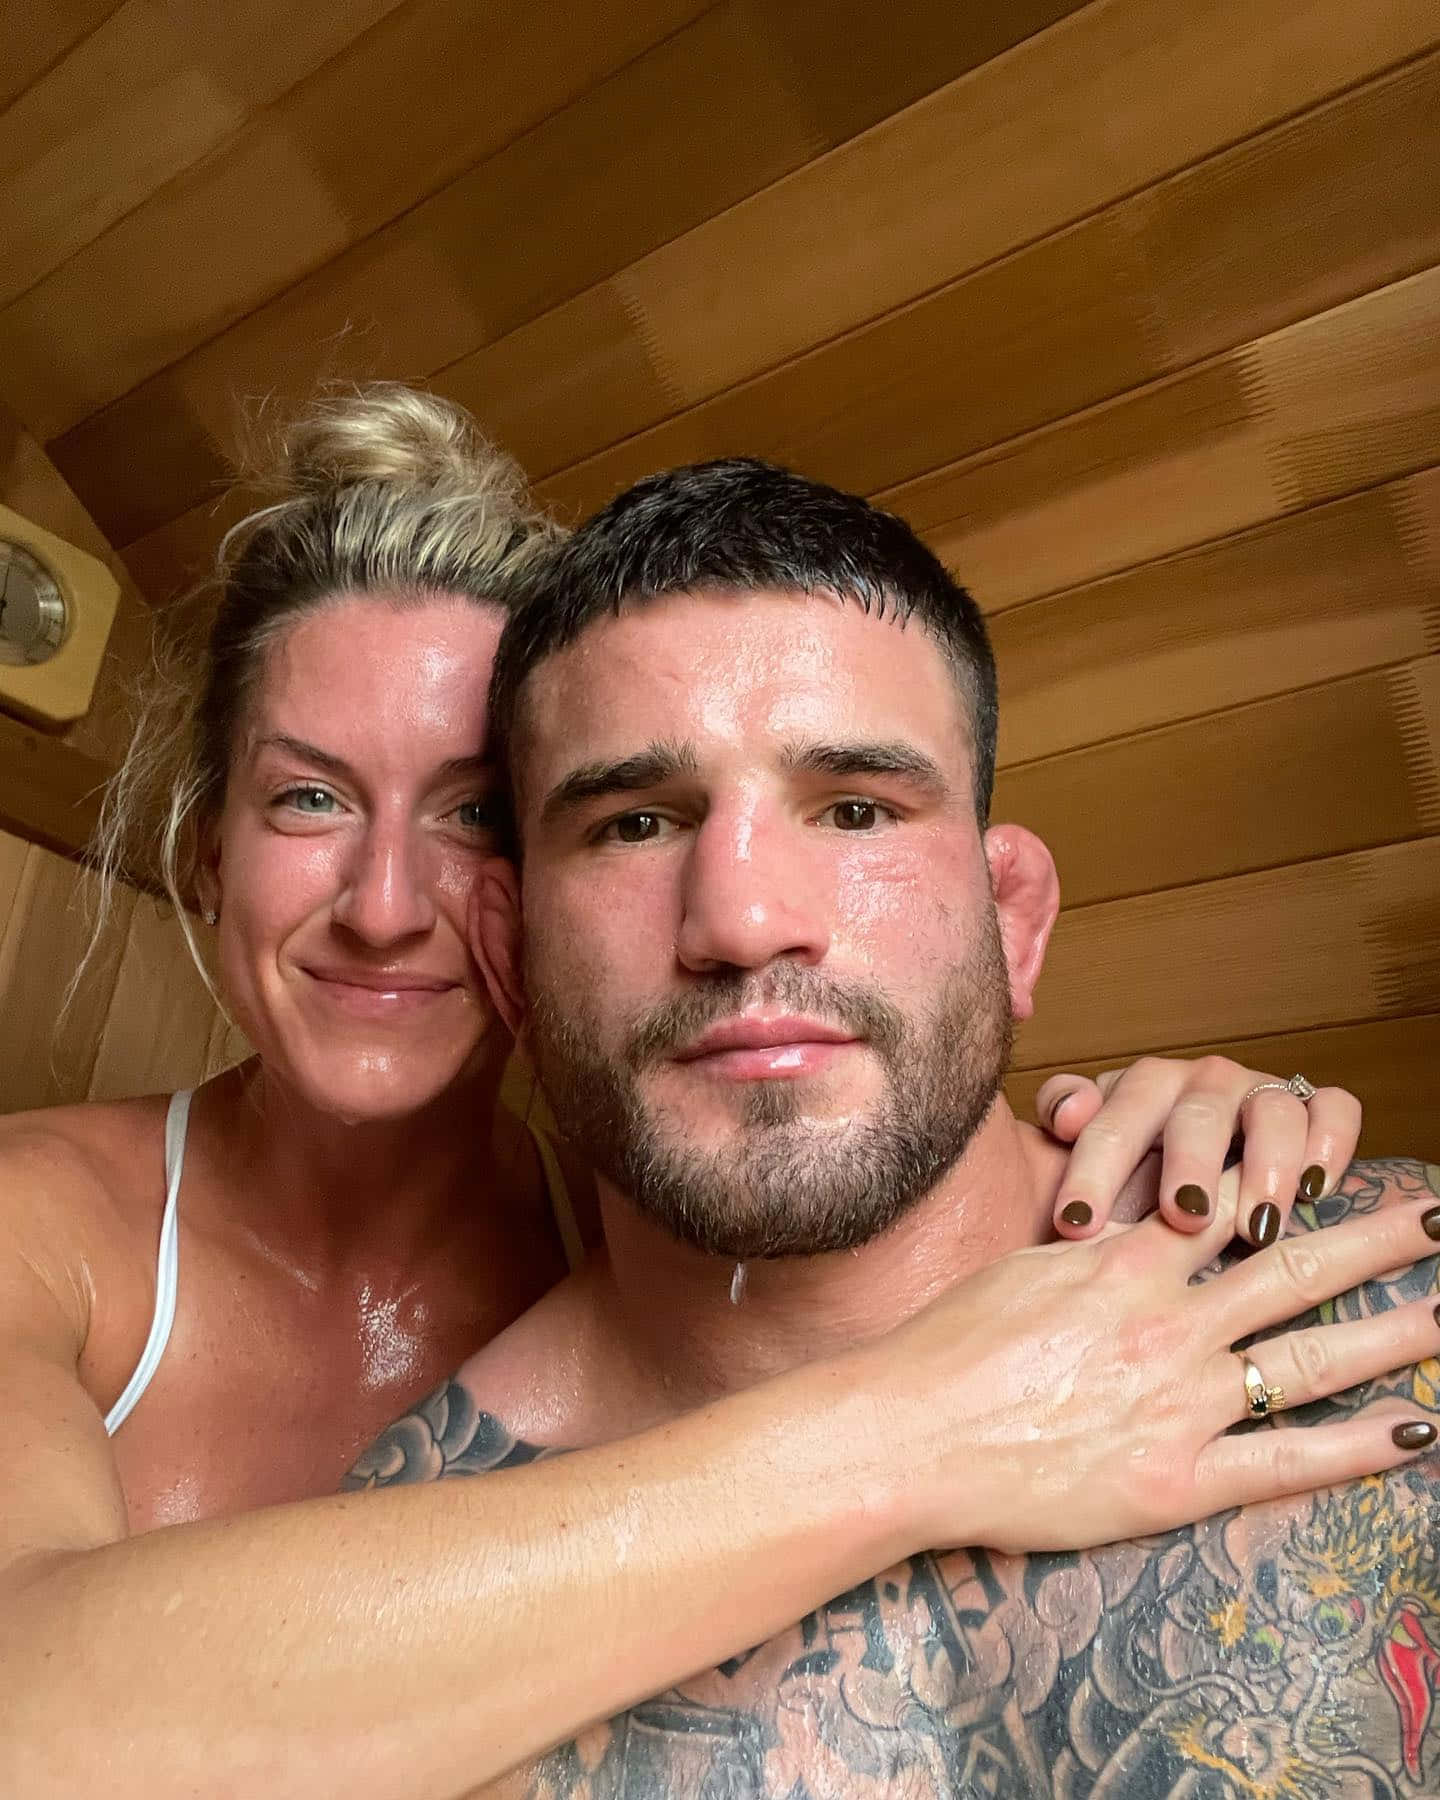 Sean Brady sammen med sin kone på saunabaggrunden. Wallpaper